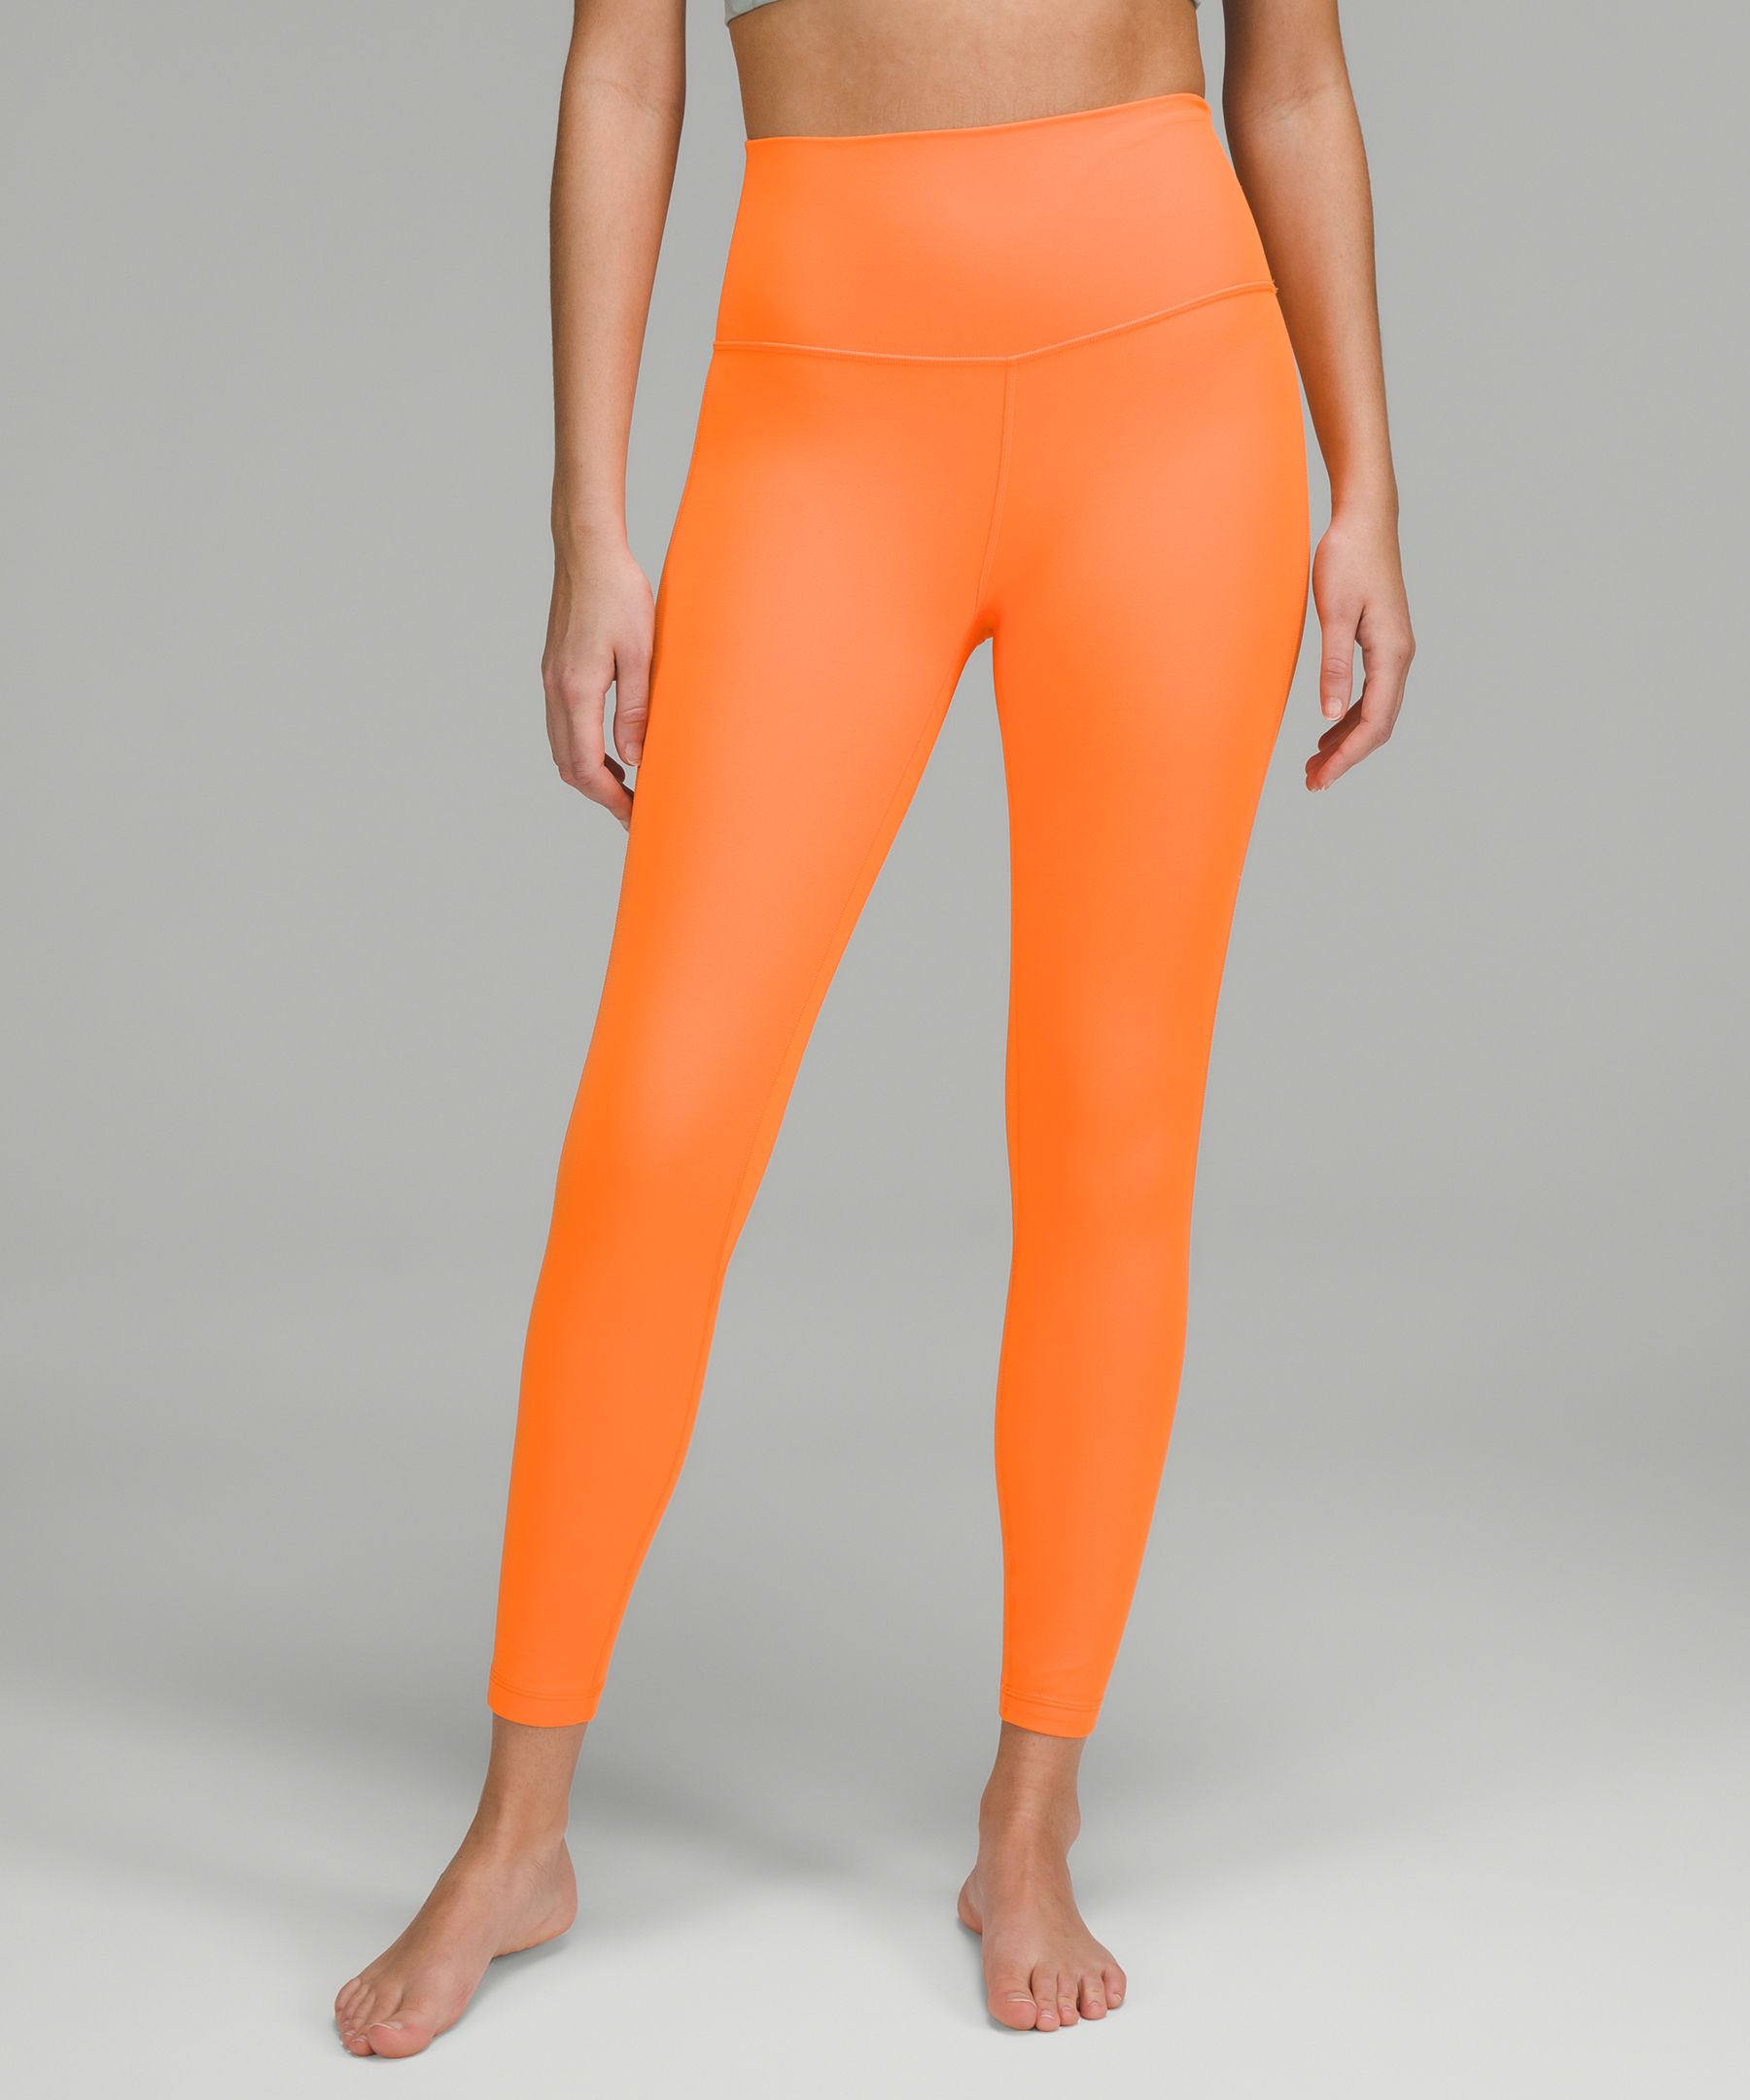 Lululemon Align™ High-rise Pants 25" In Orange Soda